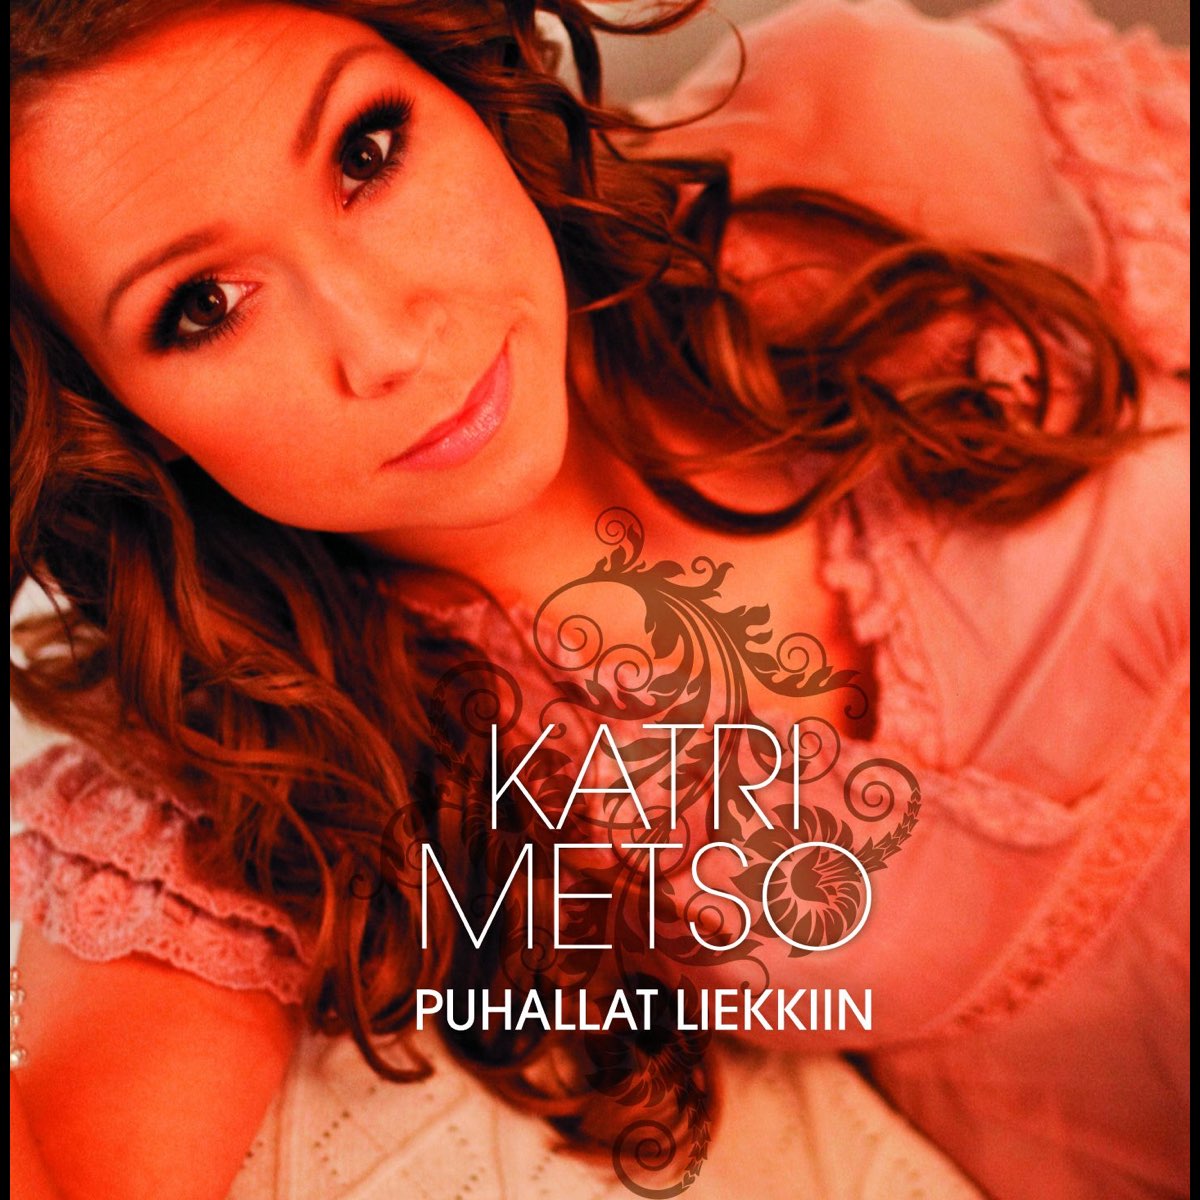 Puhallat Liekkiin - Single” álbum de Katri Metso en Apple Music